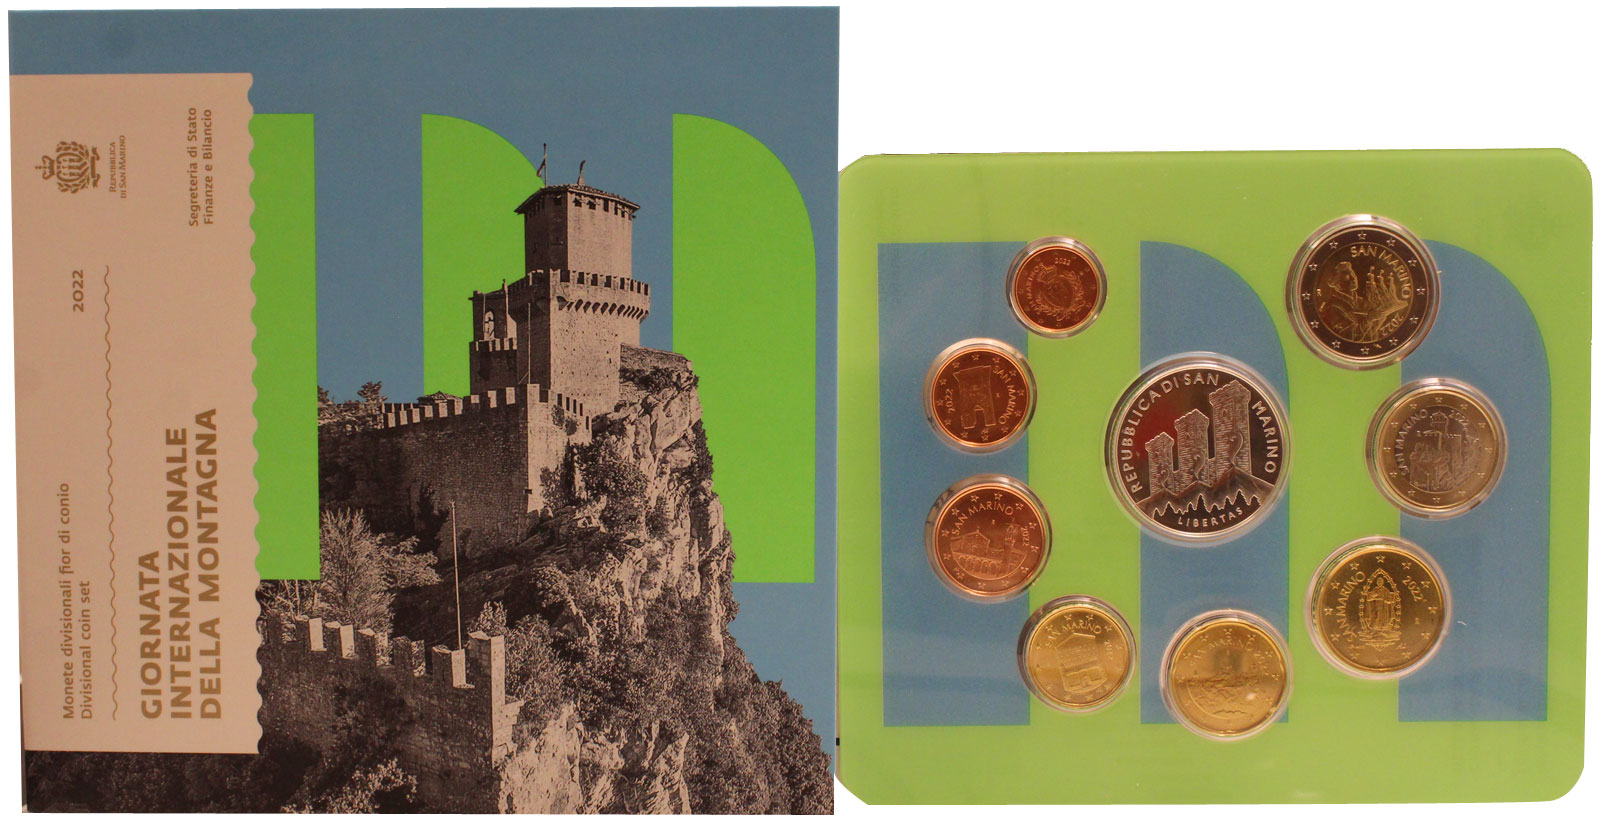 "Giornata internazionale della montagna" - Divisionale di 9 monete con 5 euro 